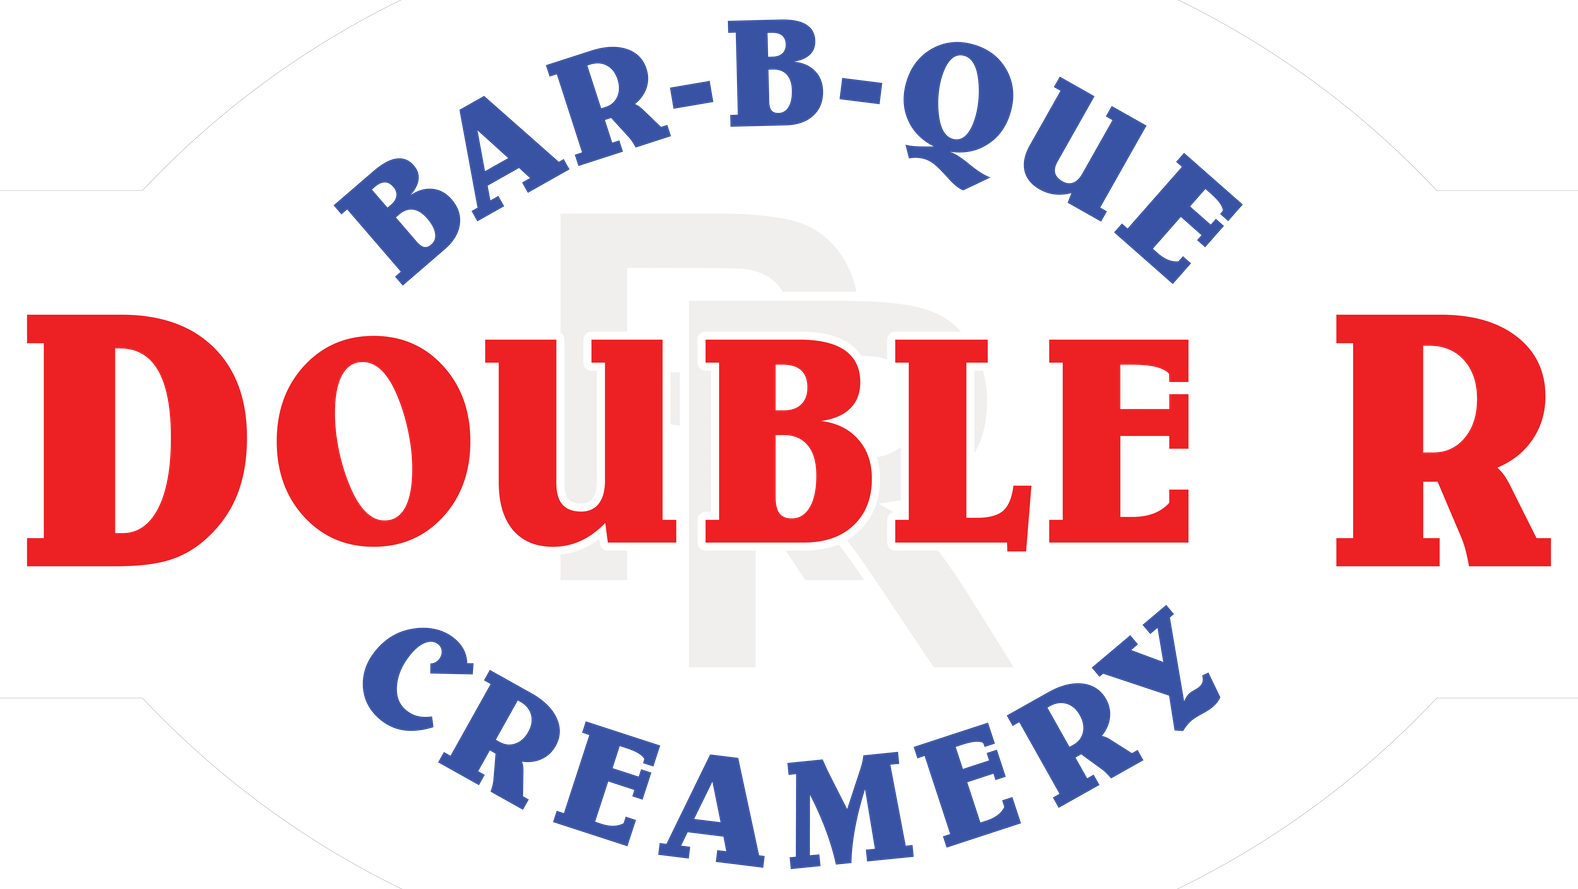 Double R Bar-b-que Creamery Home